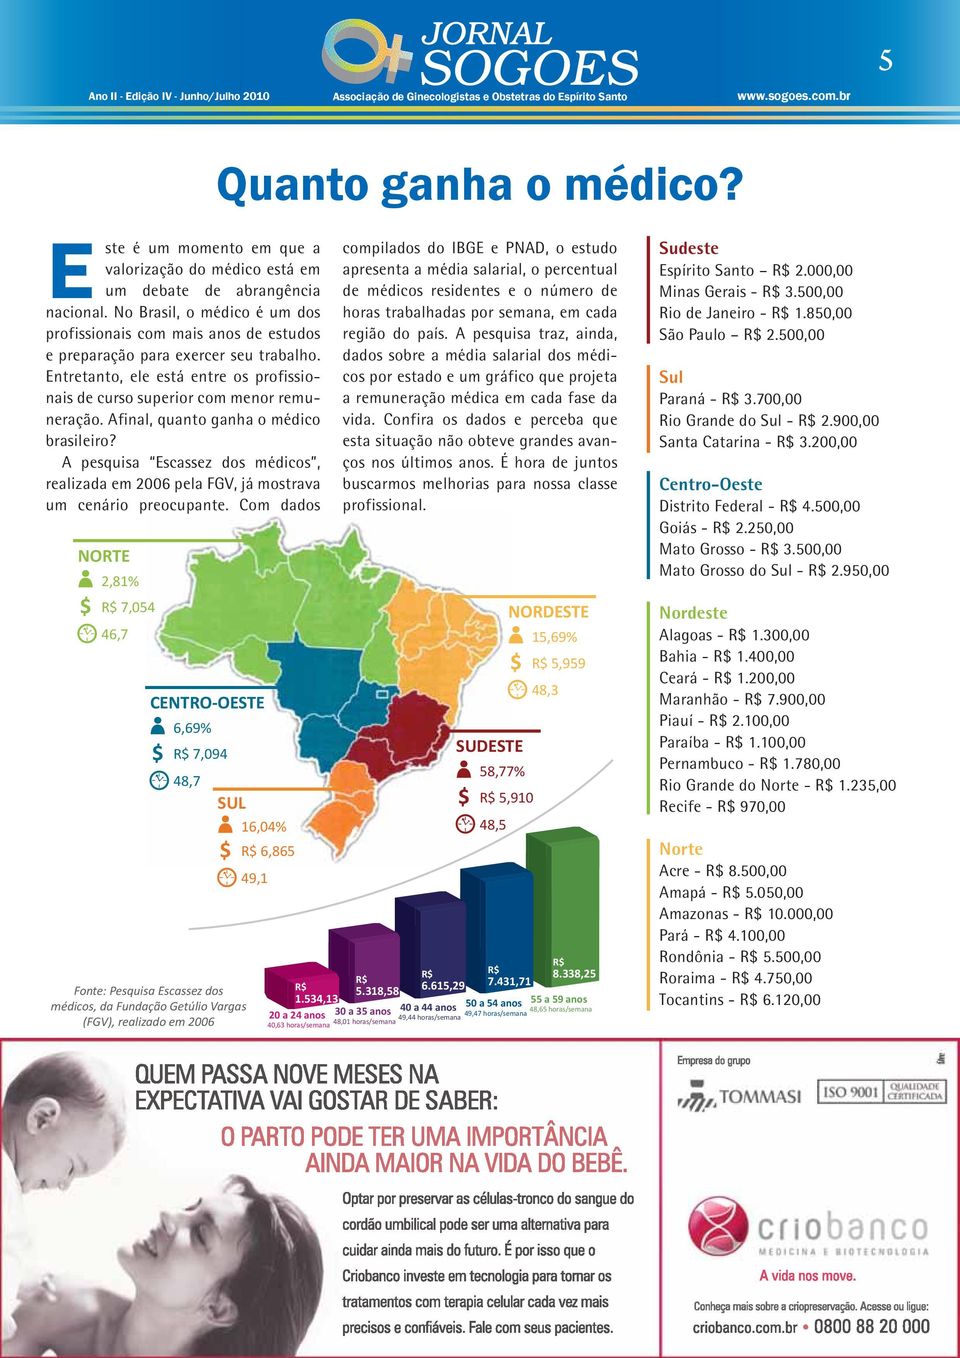 Afinal, quanto ganha o médico brasileiro? A pesquisa Escassez dos médicos, realizada em 2006 pela FGV, já mostrava um cenário preocupante. Com dados NORTE 2,81% R$ 7,054 46,7 Quanto ganha o médico?